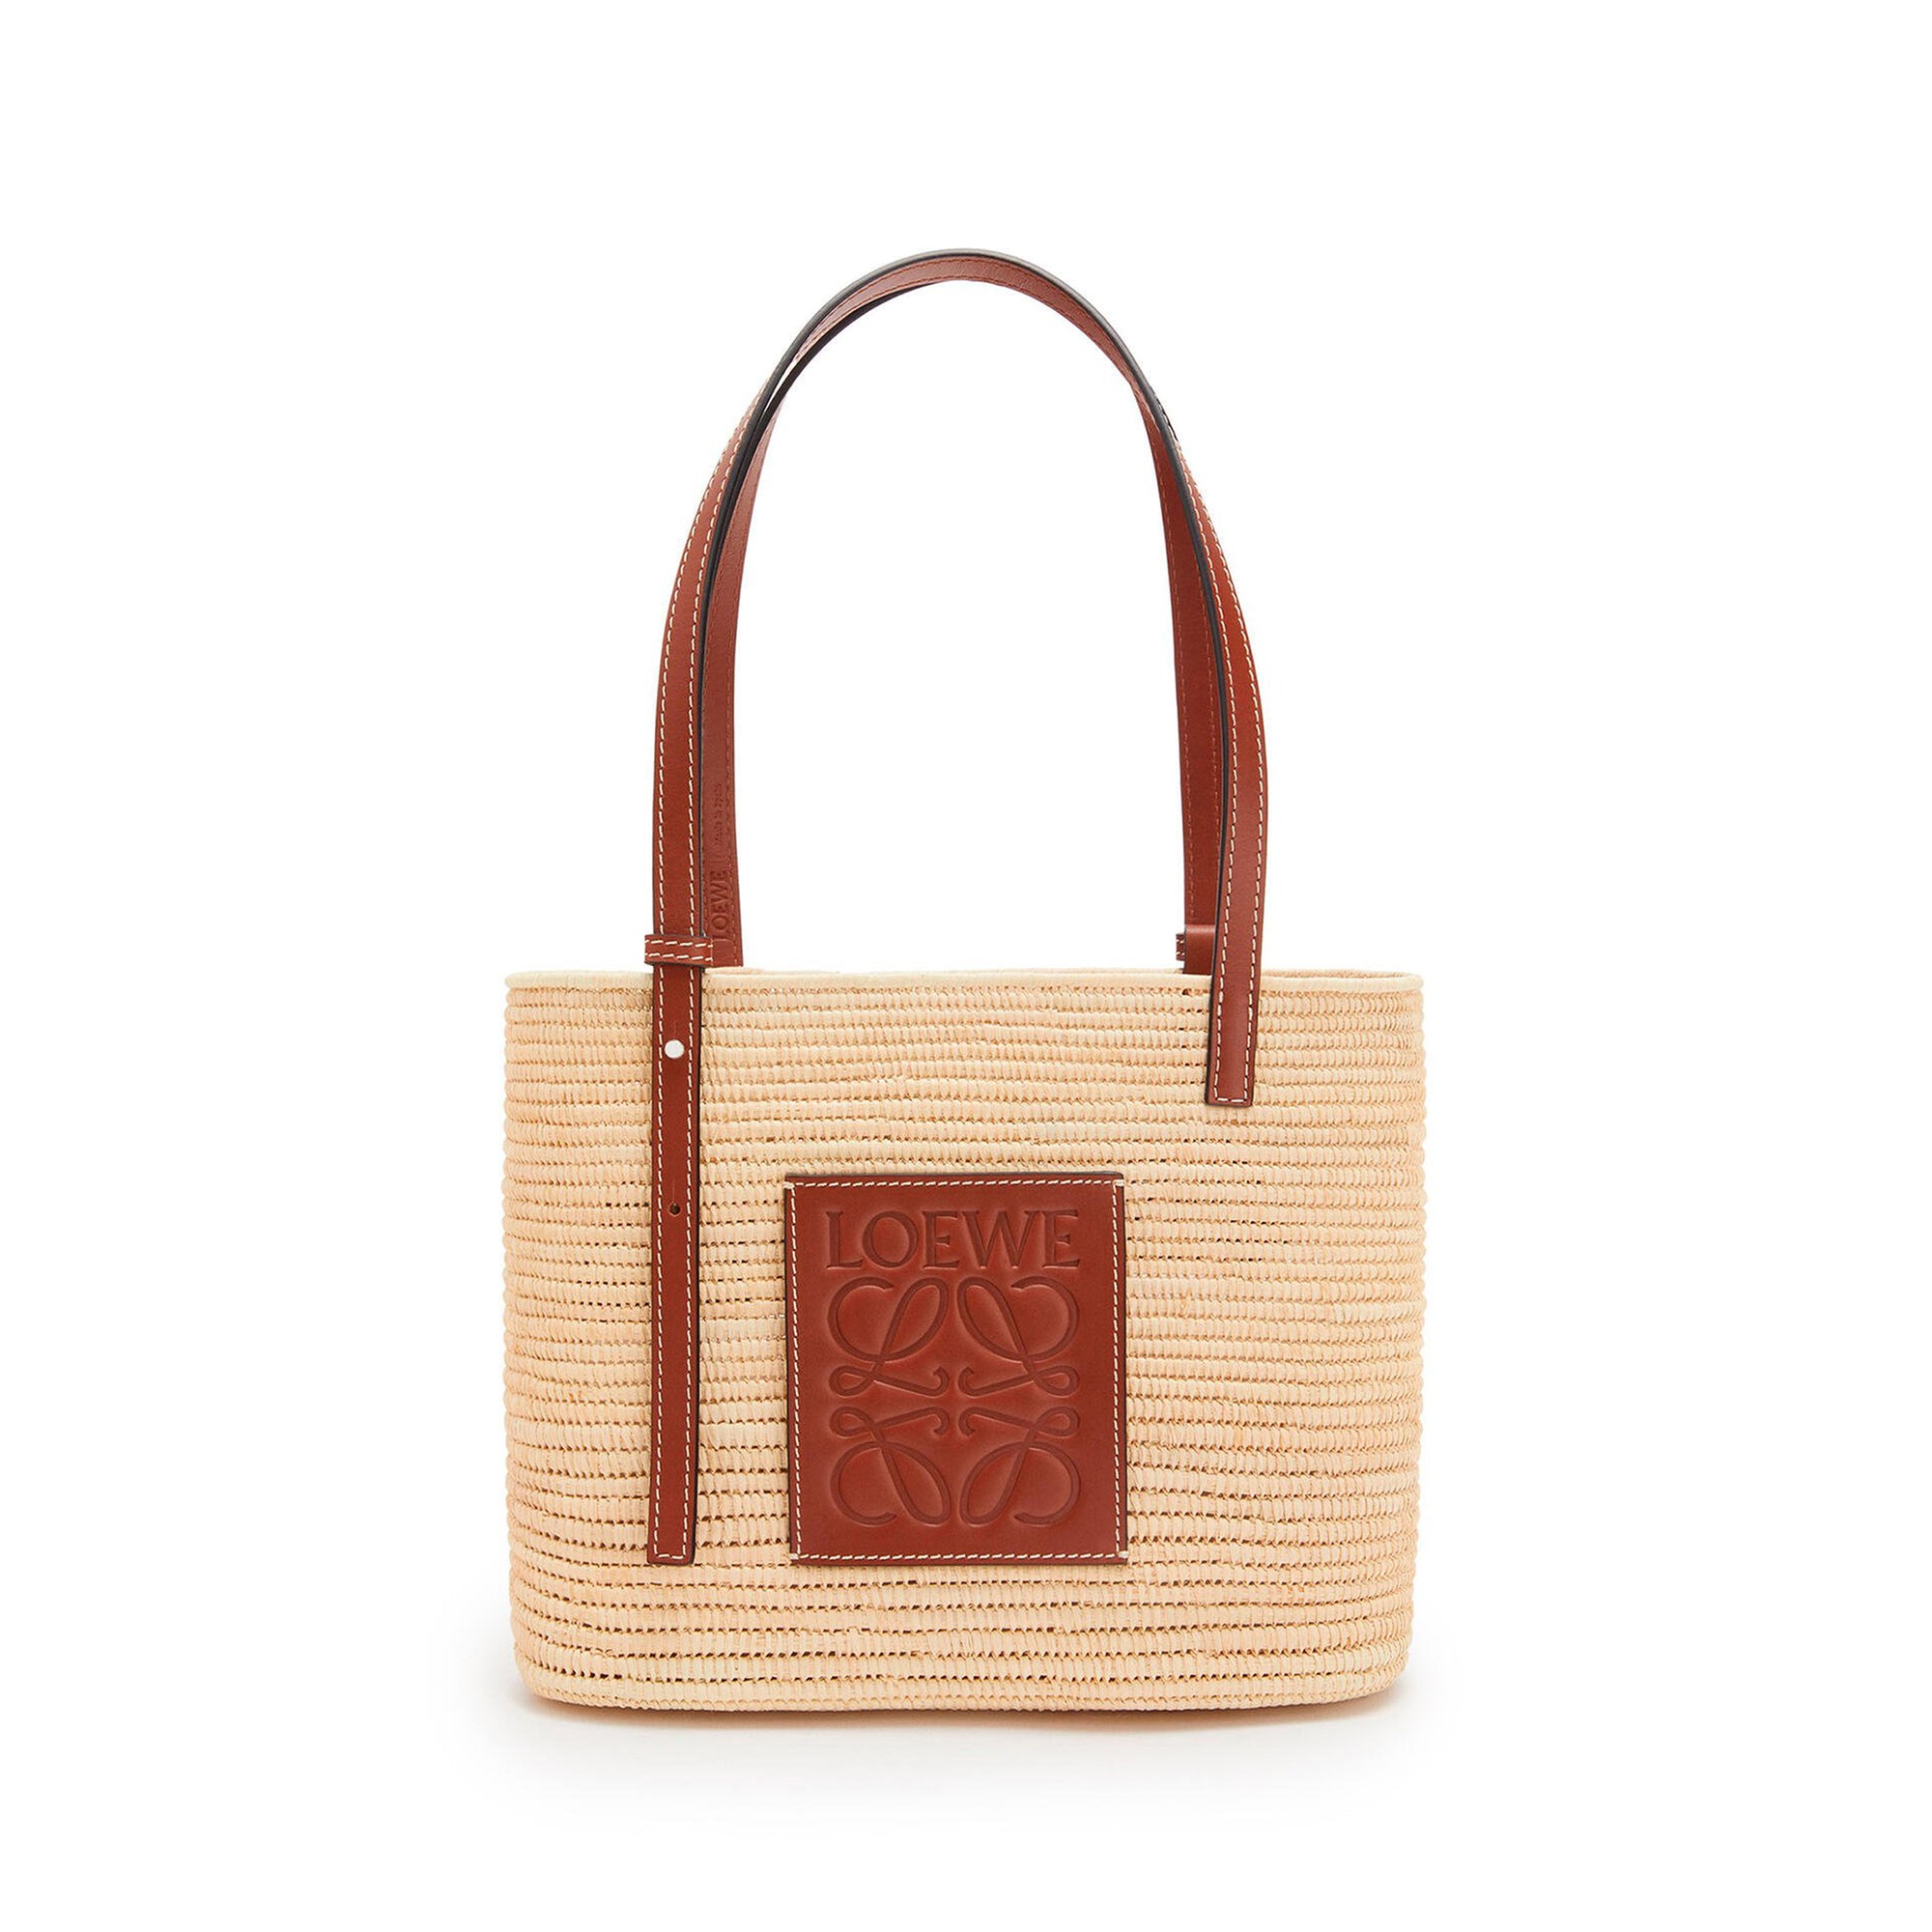 Loewe - Women’s Square Basket Small Bag - (Natural/Pecan) view 1